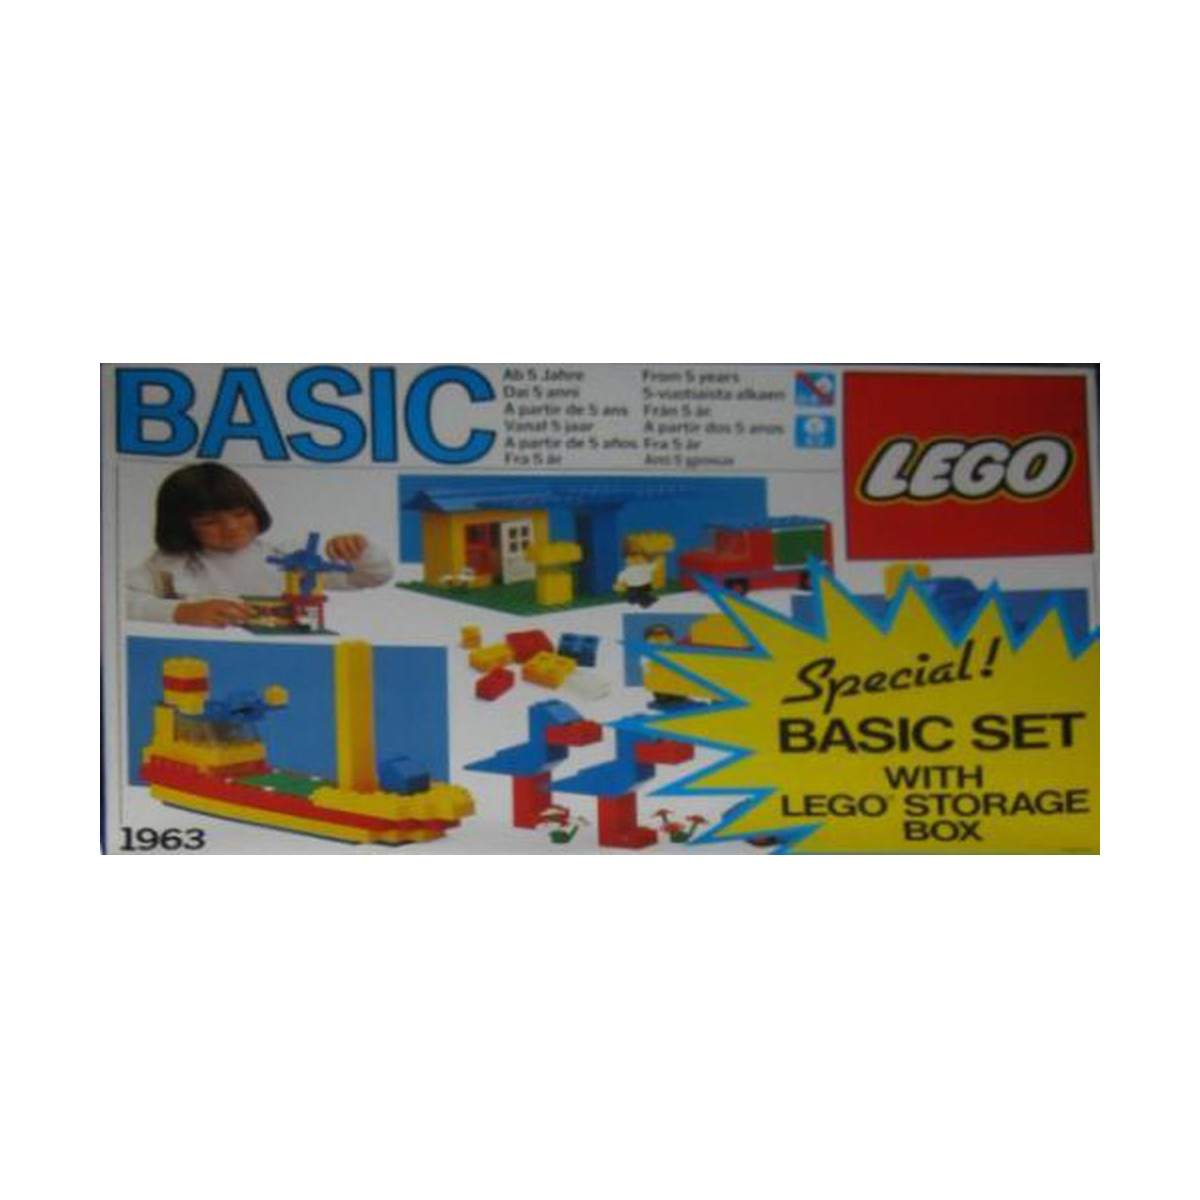 LEGO Basic Set with Storage Case - 1963